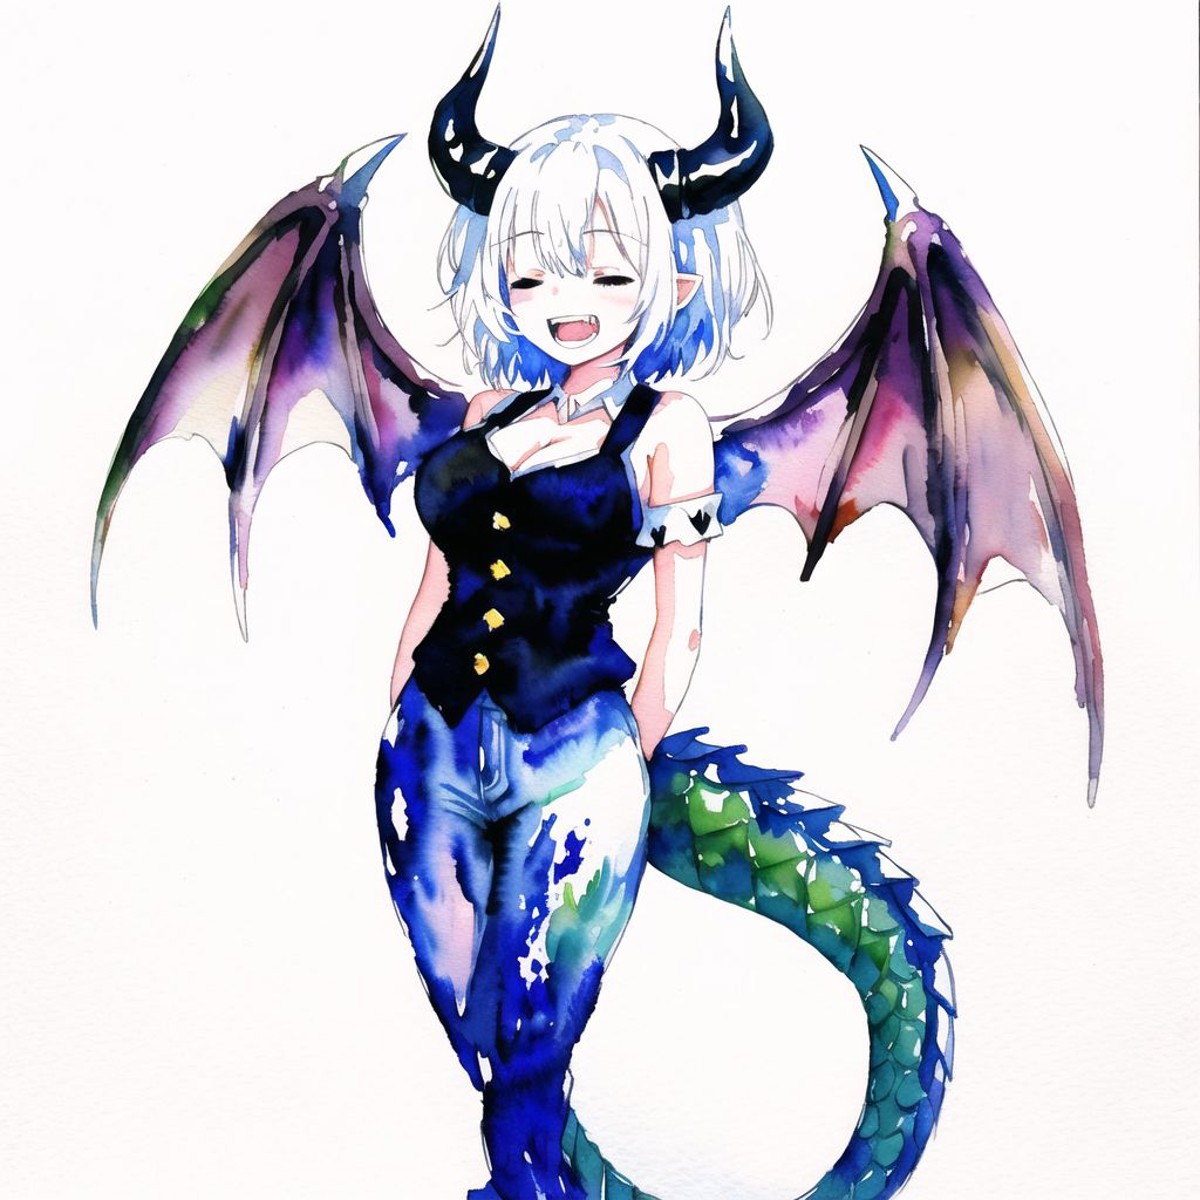 <lora:dragongirl-1_dragongirl-2__dragongirl-3_dragongirl-4--retro_ham_avas_jun_rifl--09-01:1.0>, 

(dragon girl:1.0), drag...